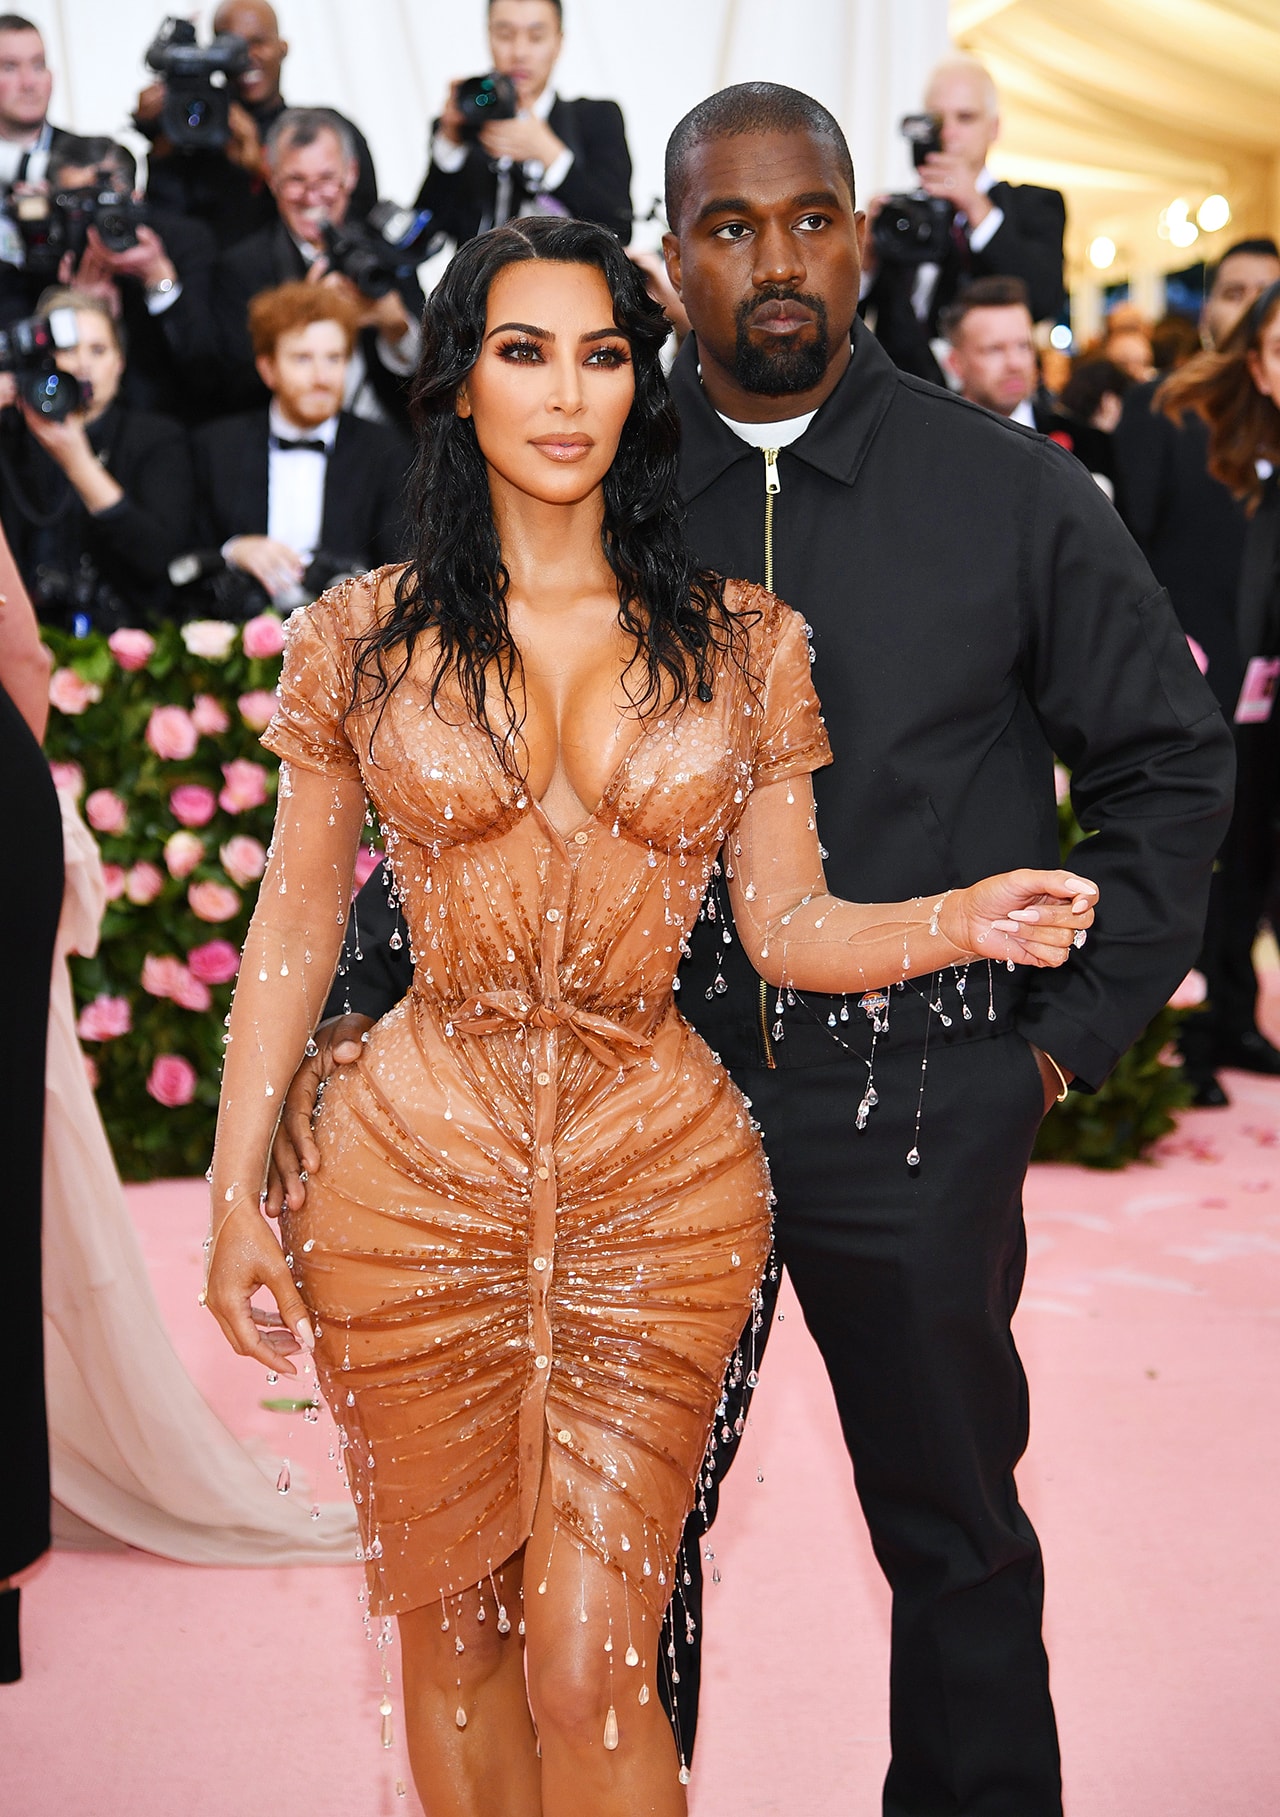 Kim Kardashian West Kanye West Met Gala 2019 Red Carpet Camp Notes on Fashion